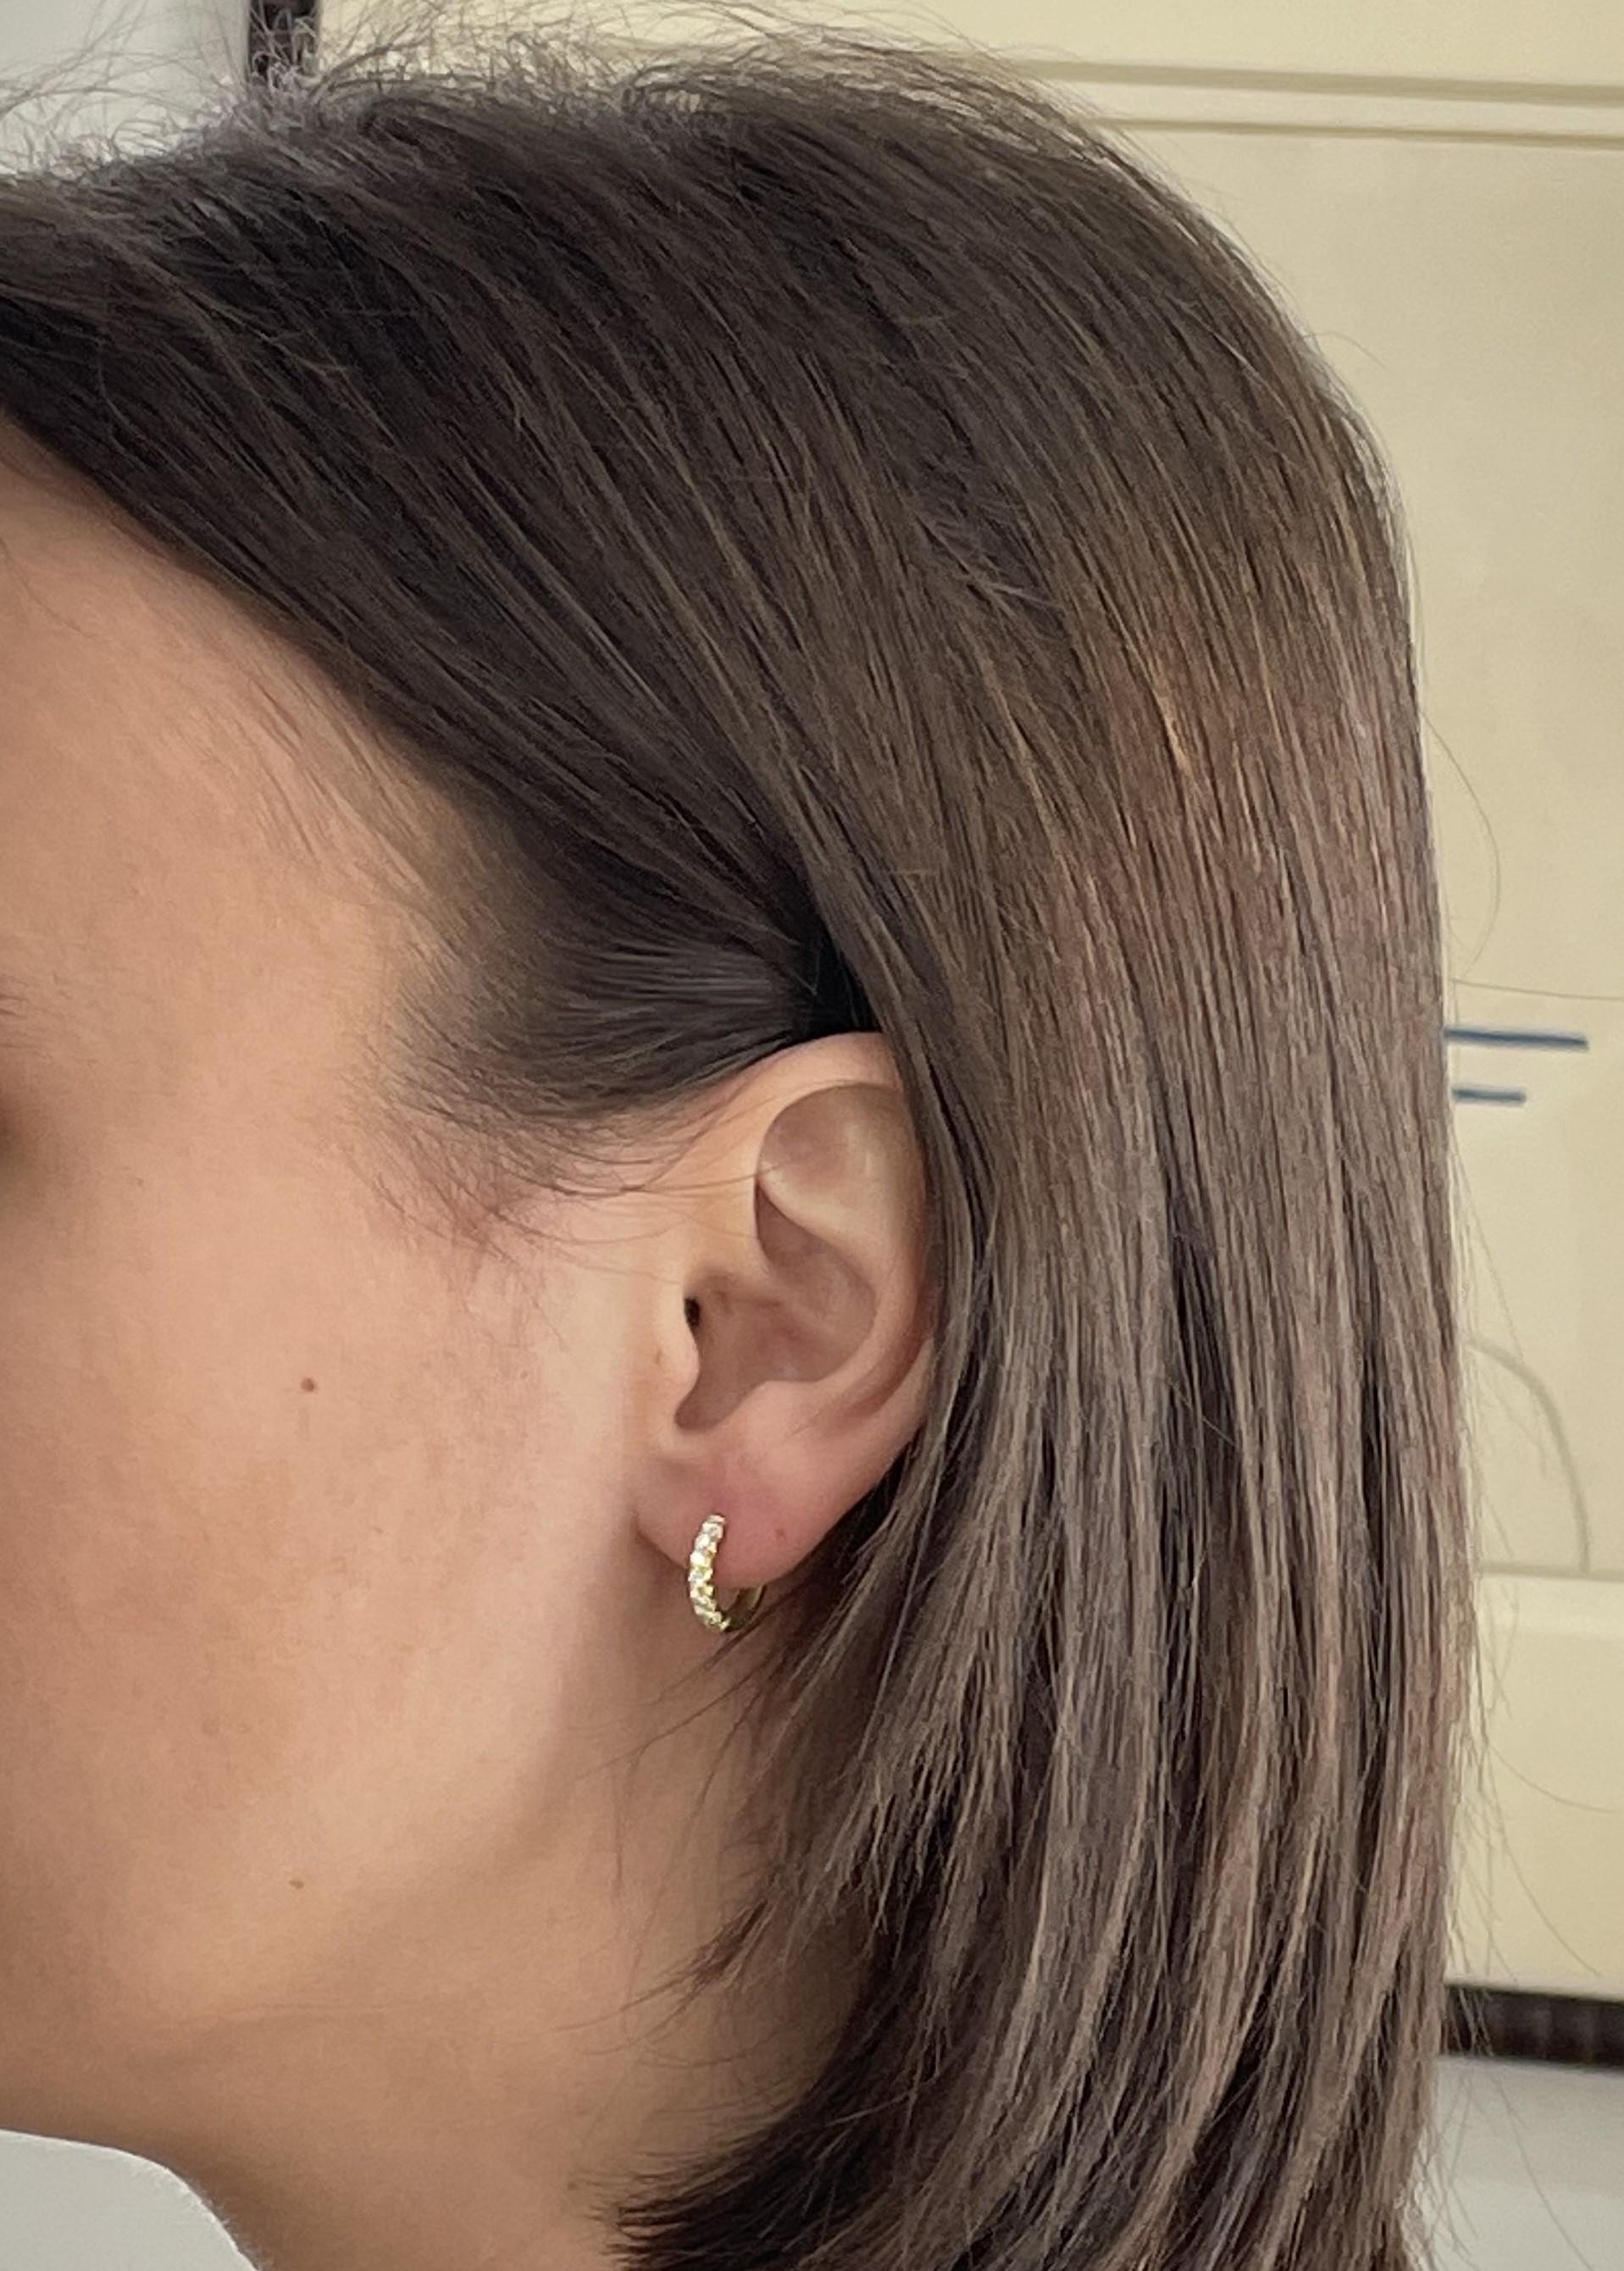 Les boucles d'oreilles modernes et intemporelles en or 18 carats Micro Pave Small Hinged Hoop Ears de Faye Kim s'adapteront à tous les styles et à toutes les garde-robes, ajoutant de l'éclat à toutes les occasions ! 

Diamants .26 tcw
Longueur